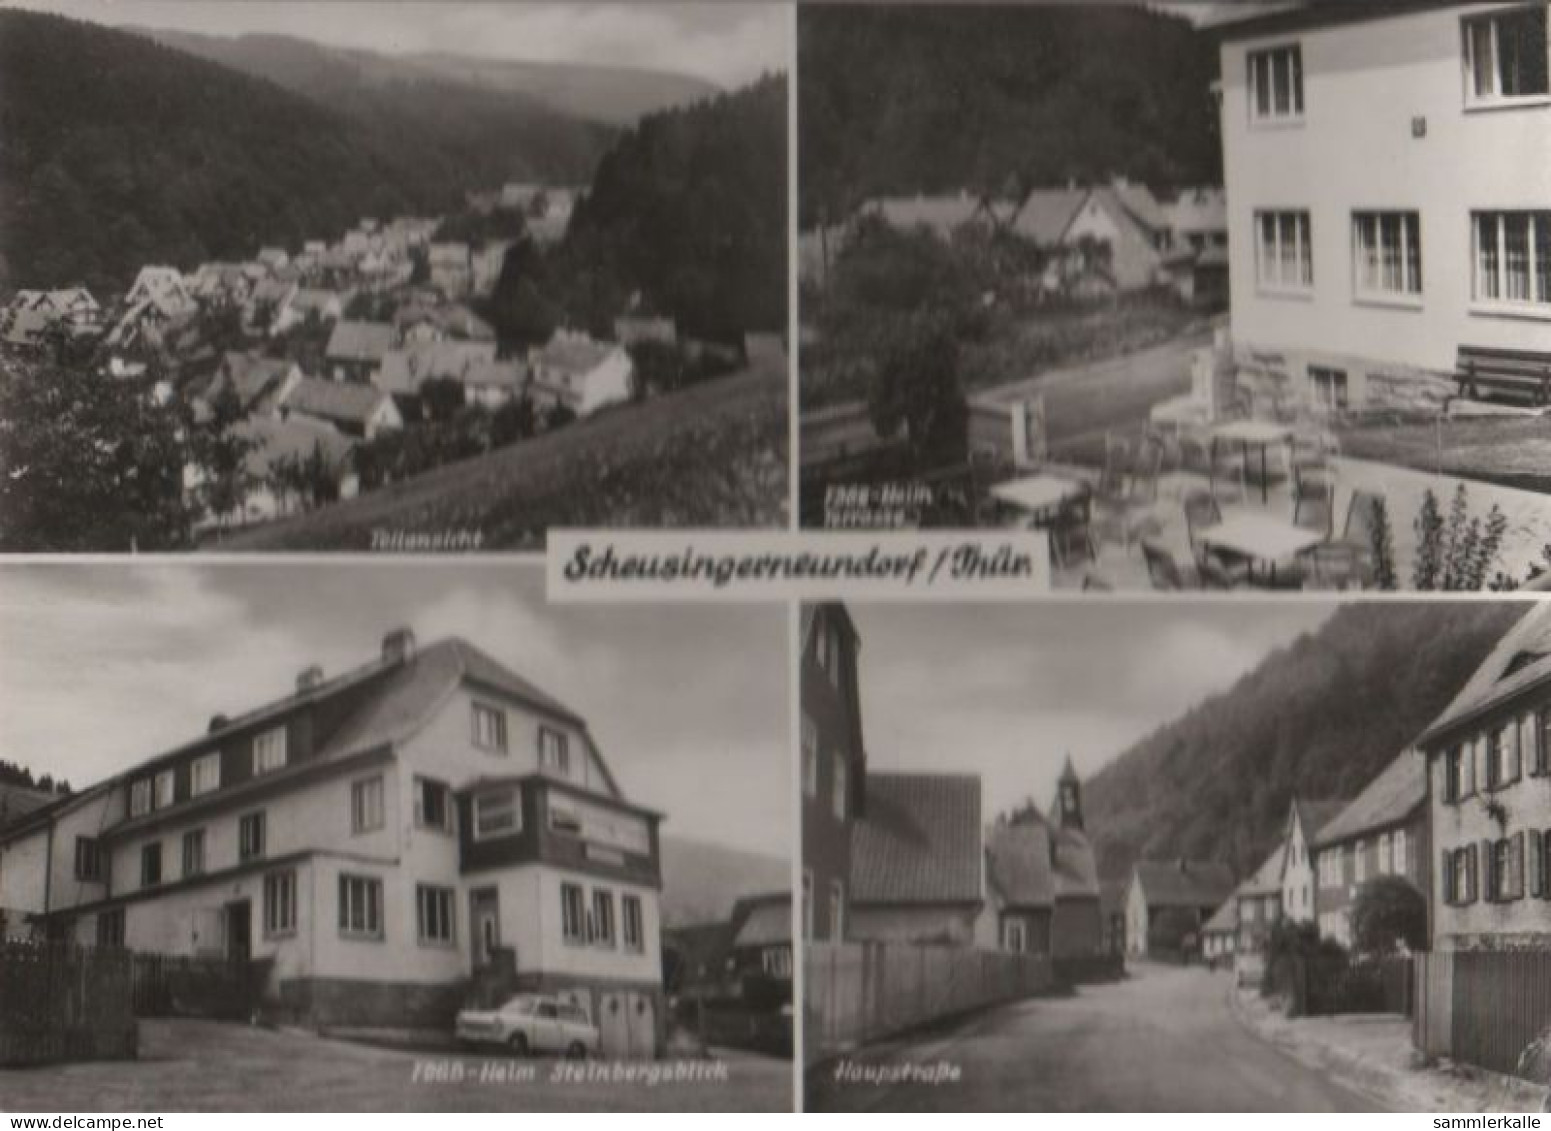 51542 - Nahetal-Waldau, Schleusingerneundorf - U.a. Teilansicht - 1974 - Hildburghausen